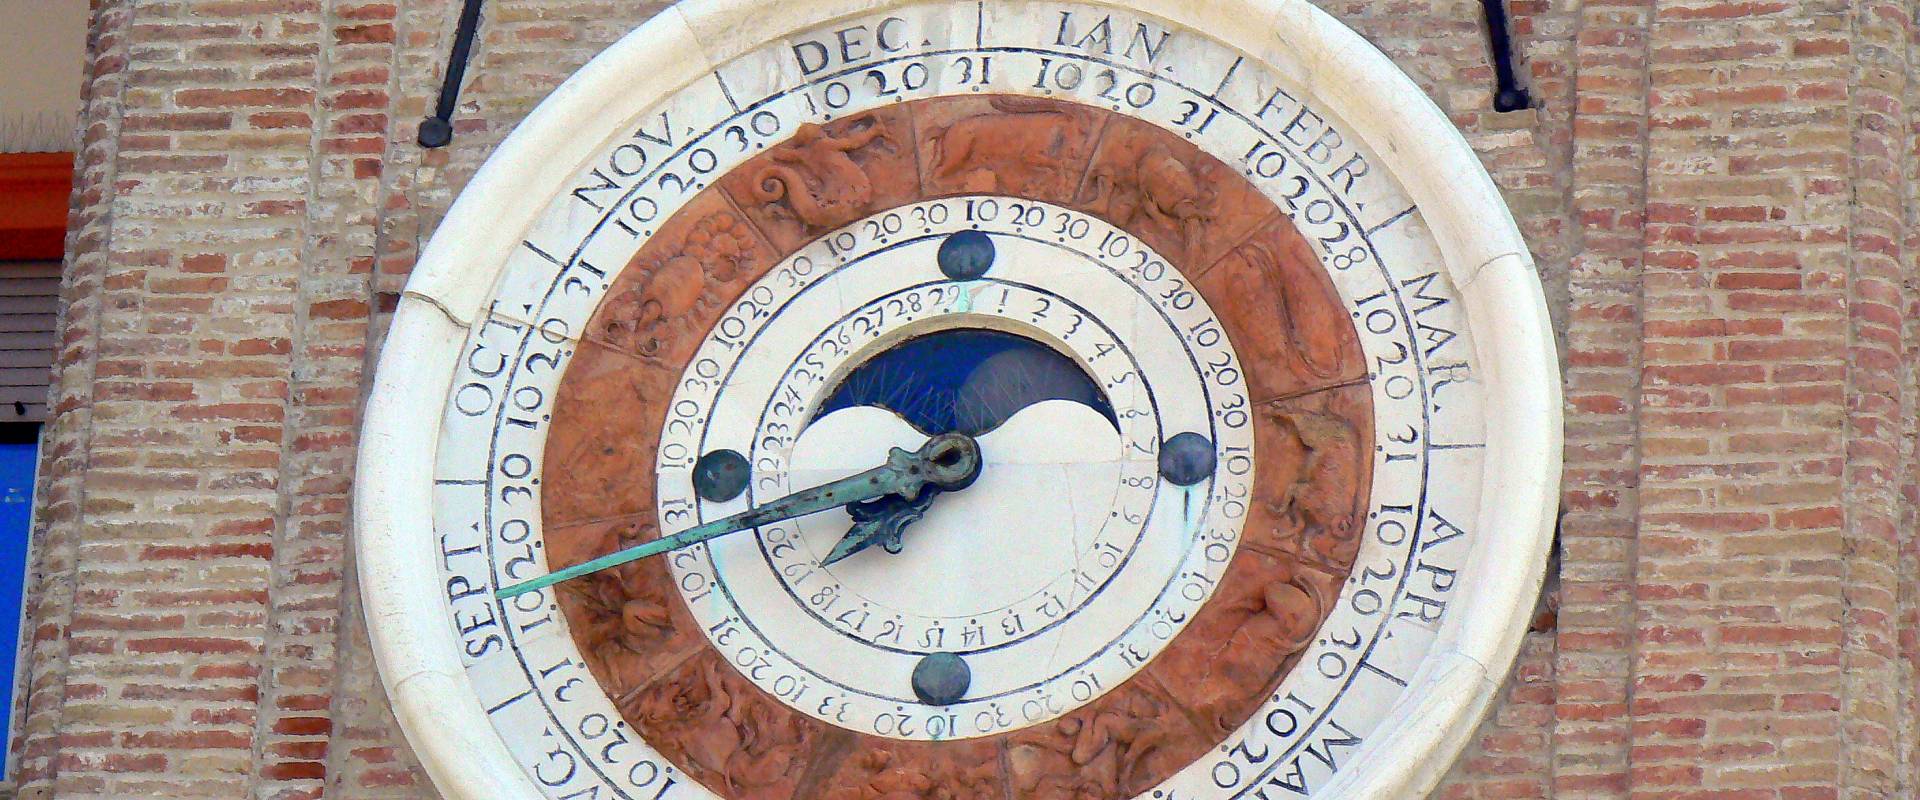 Orologio astronomico torre orologio Rimini photo by Paperoastro